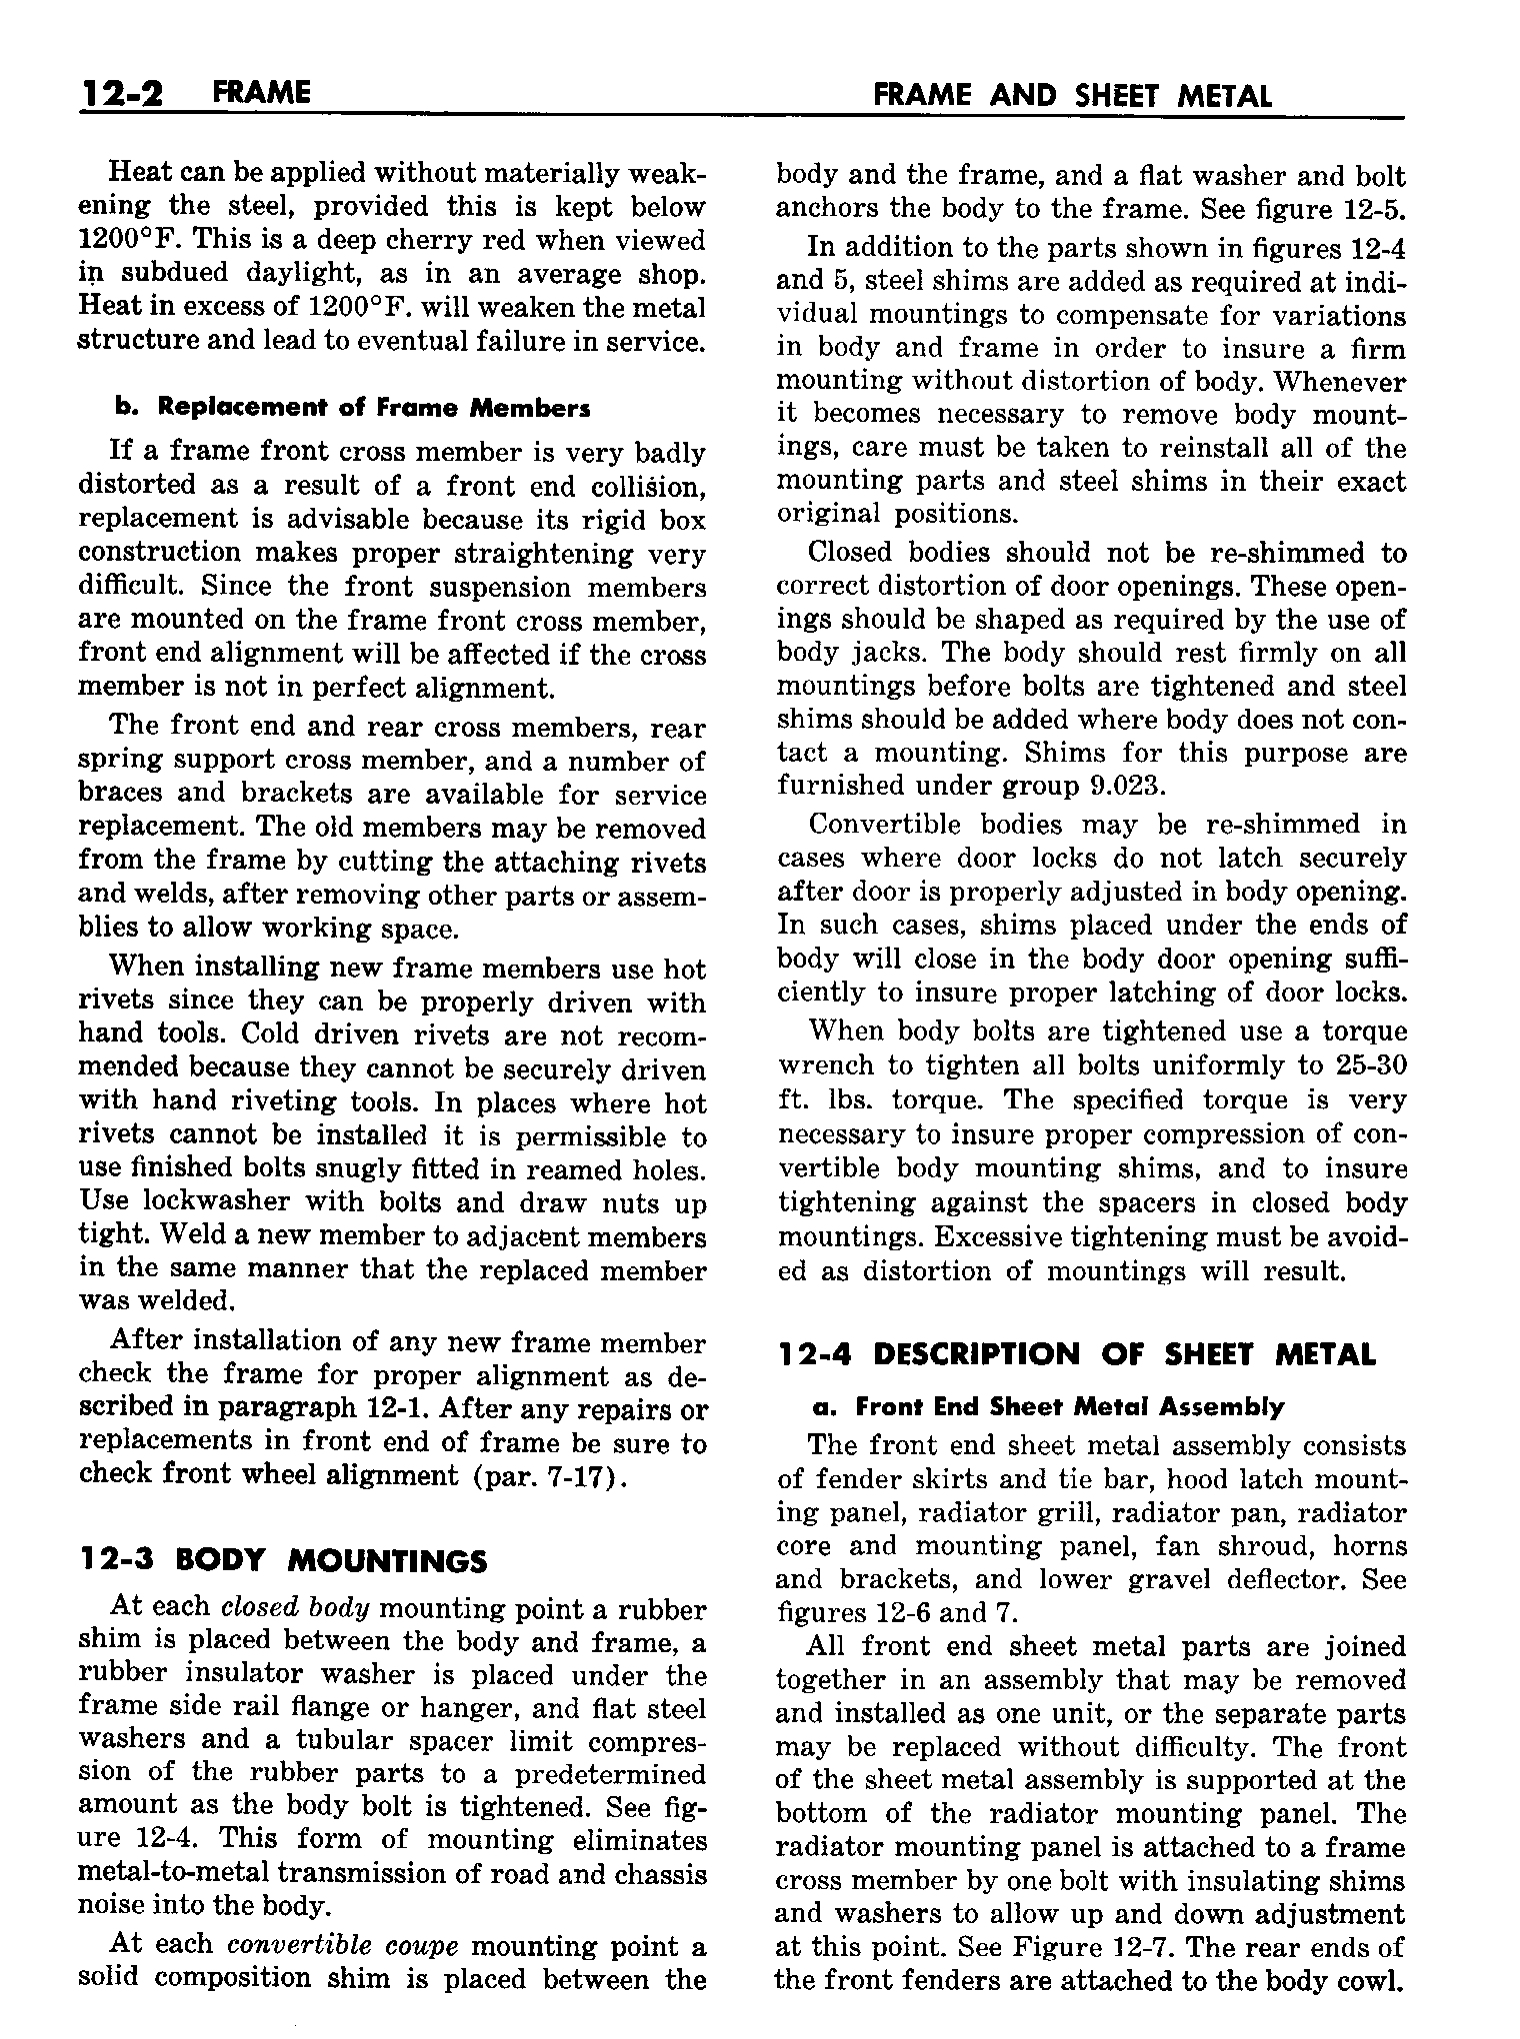 n_13 1958 Buick Shop Manual - Frame & Sheet Metal_2.jpg